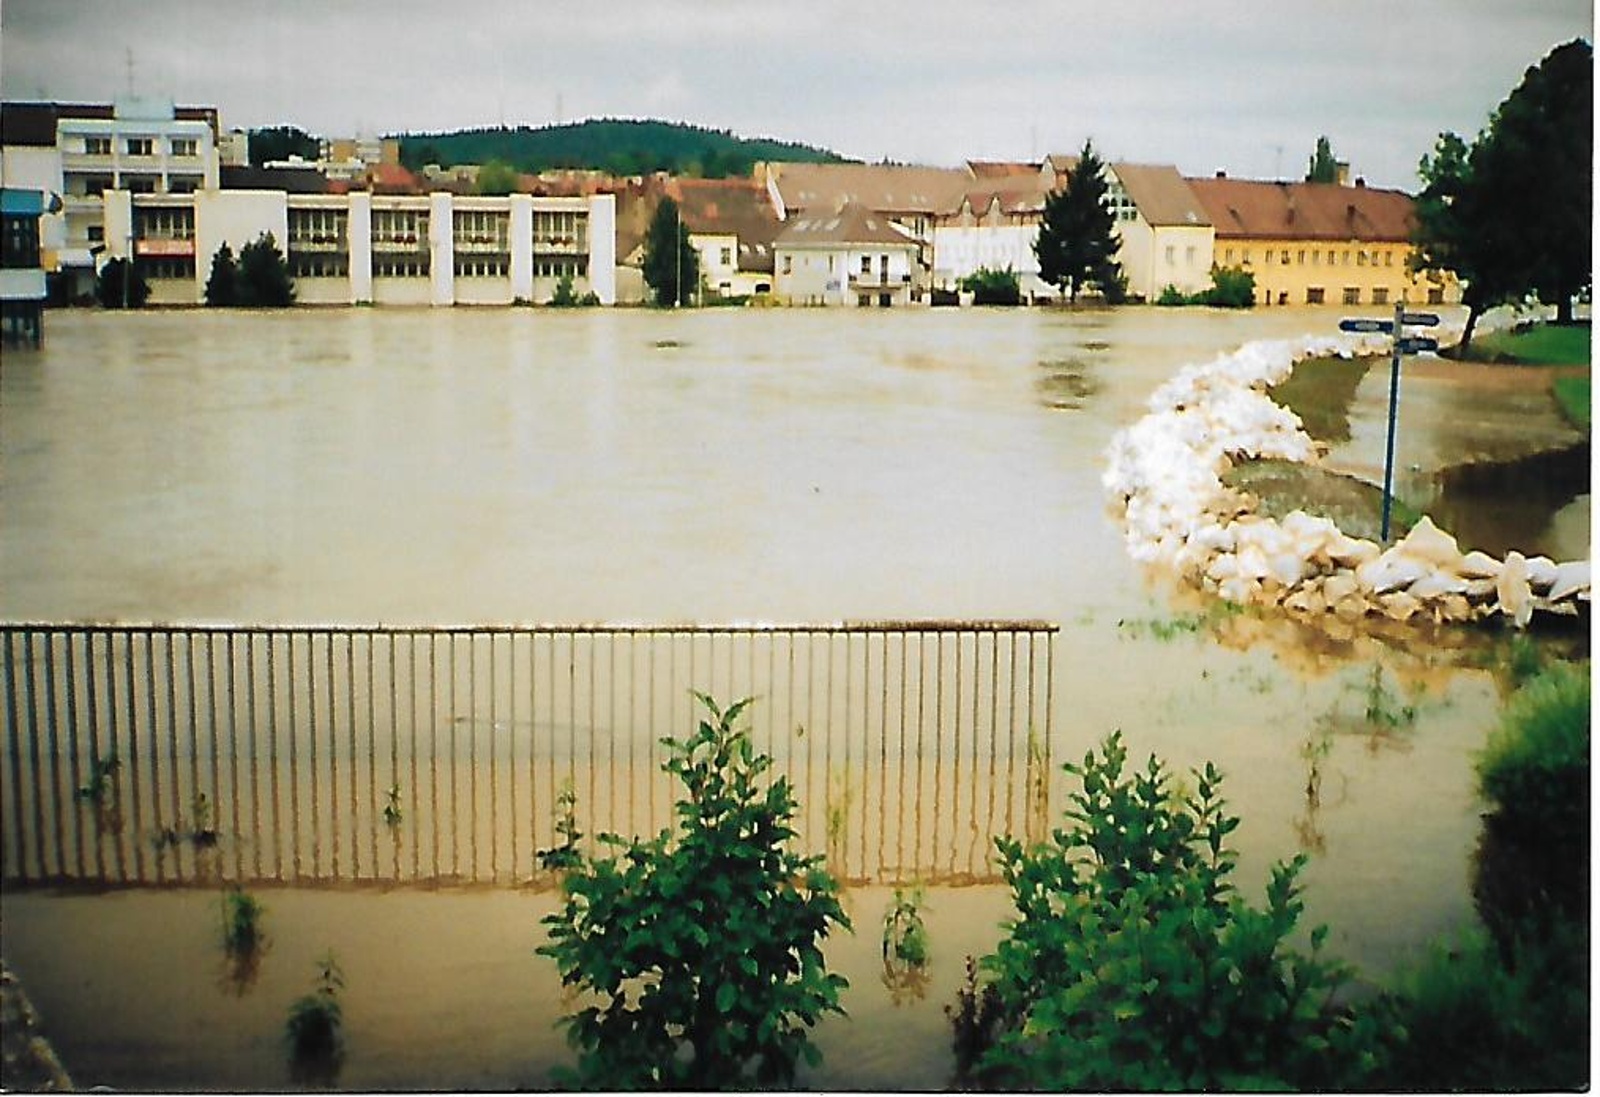 OBRAZEM: Ničivé povodně na Strakonicku před 20 lety - Strakonický deník